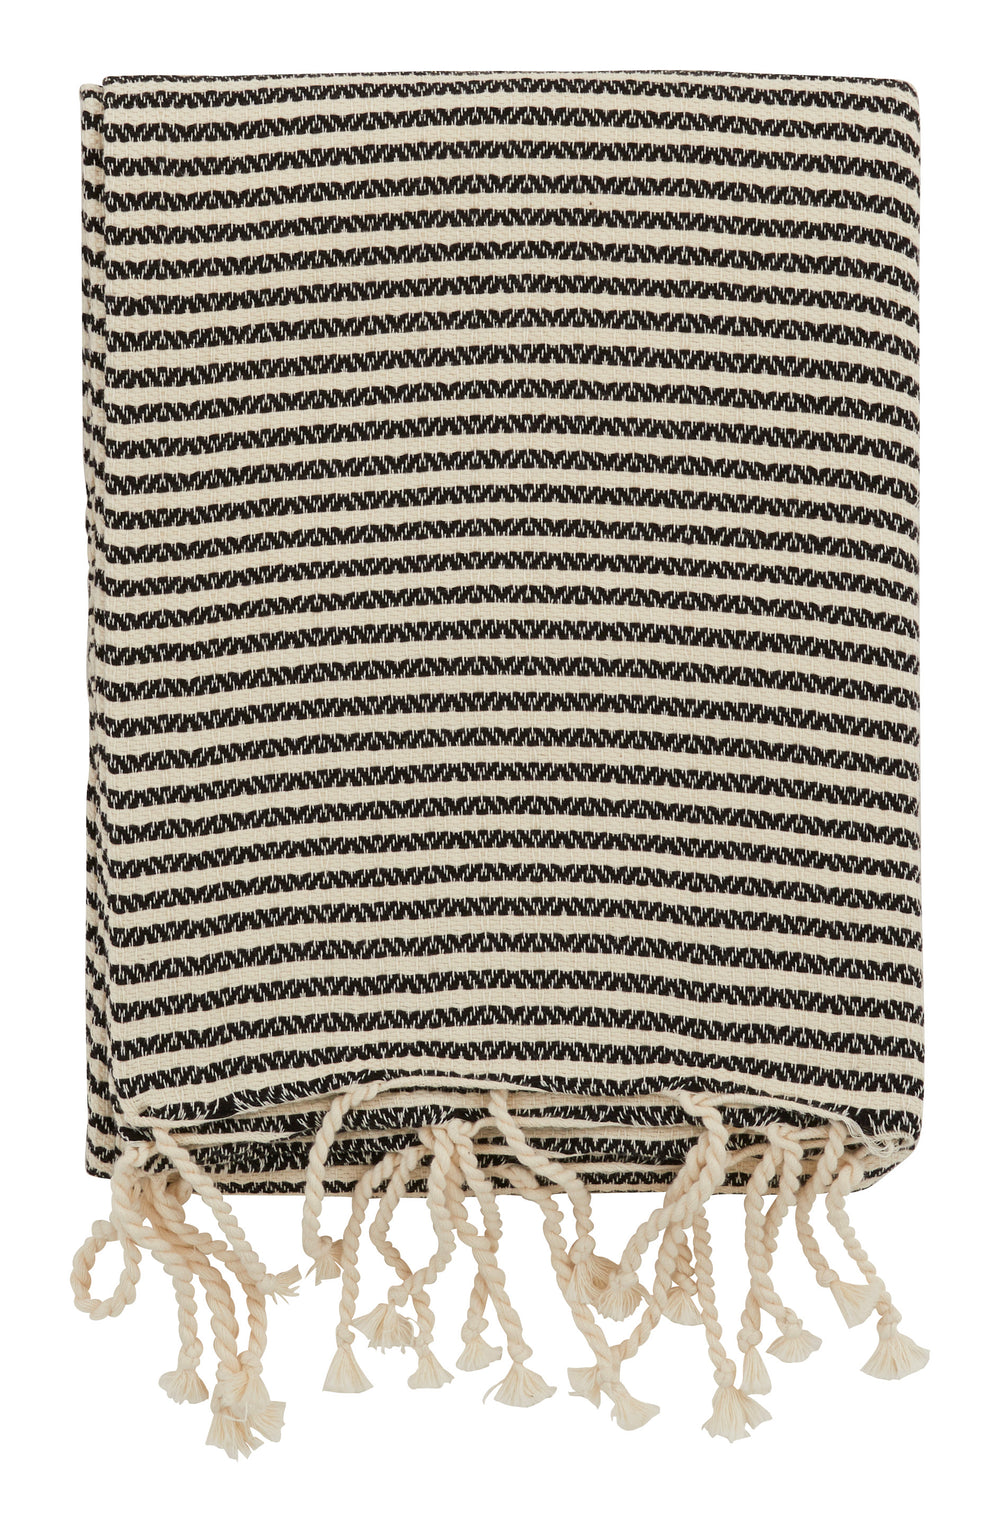 Hammam Black Striped Towels